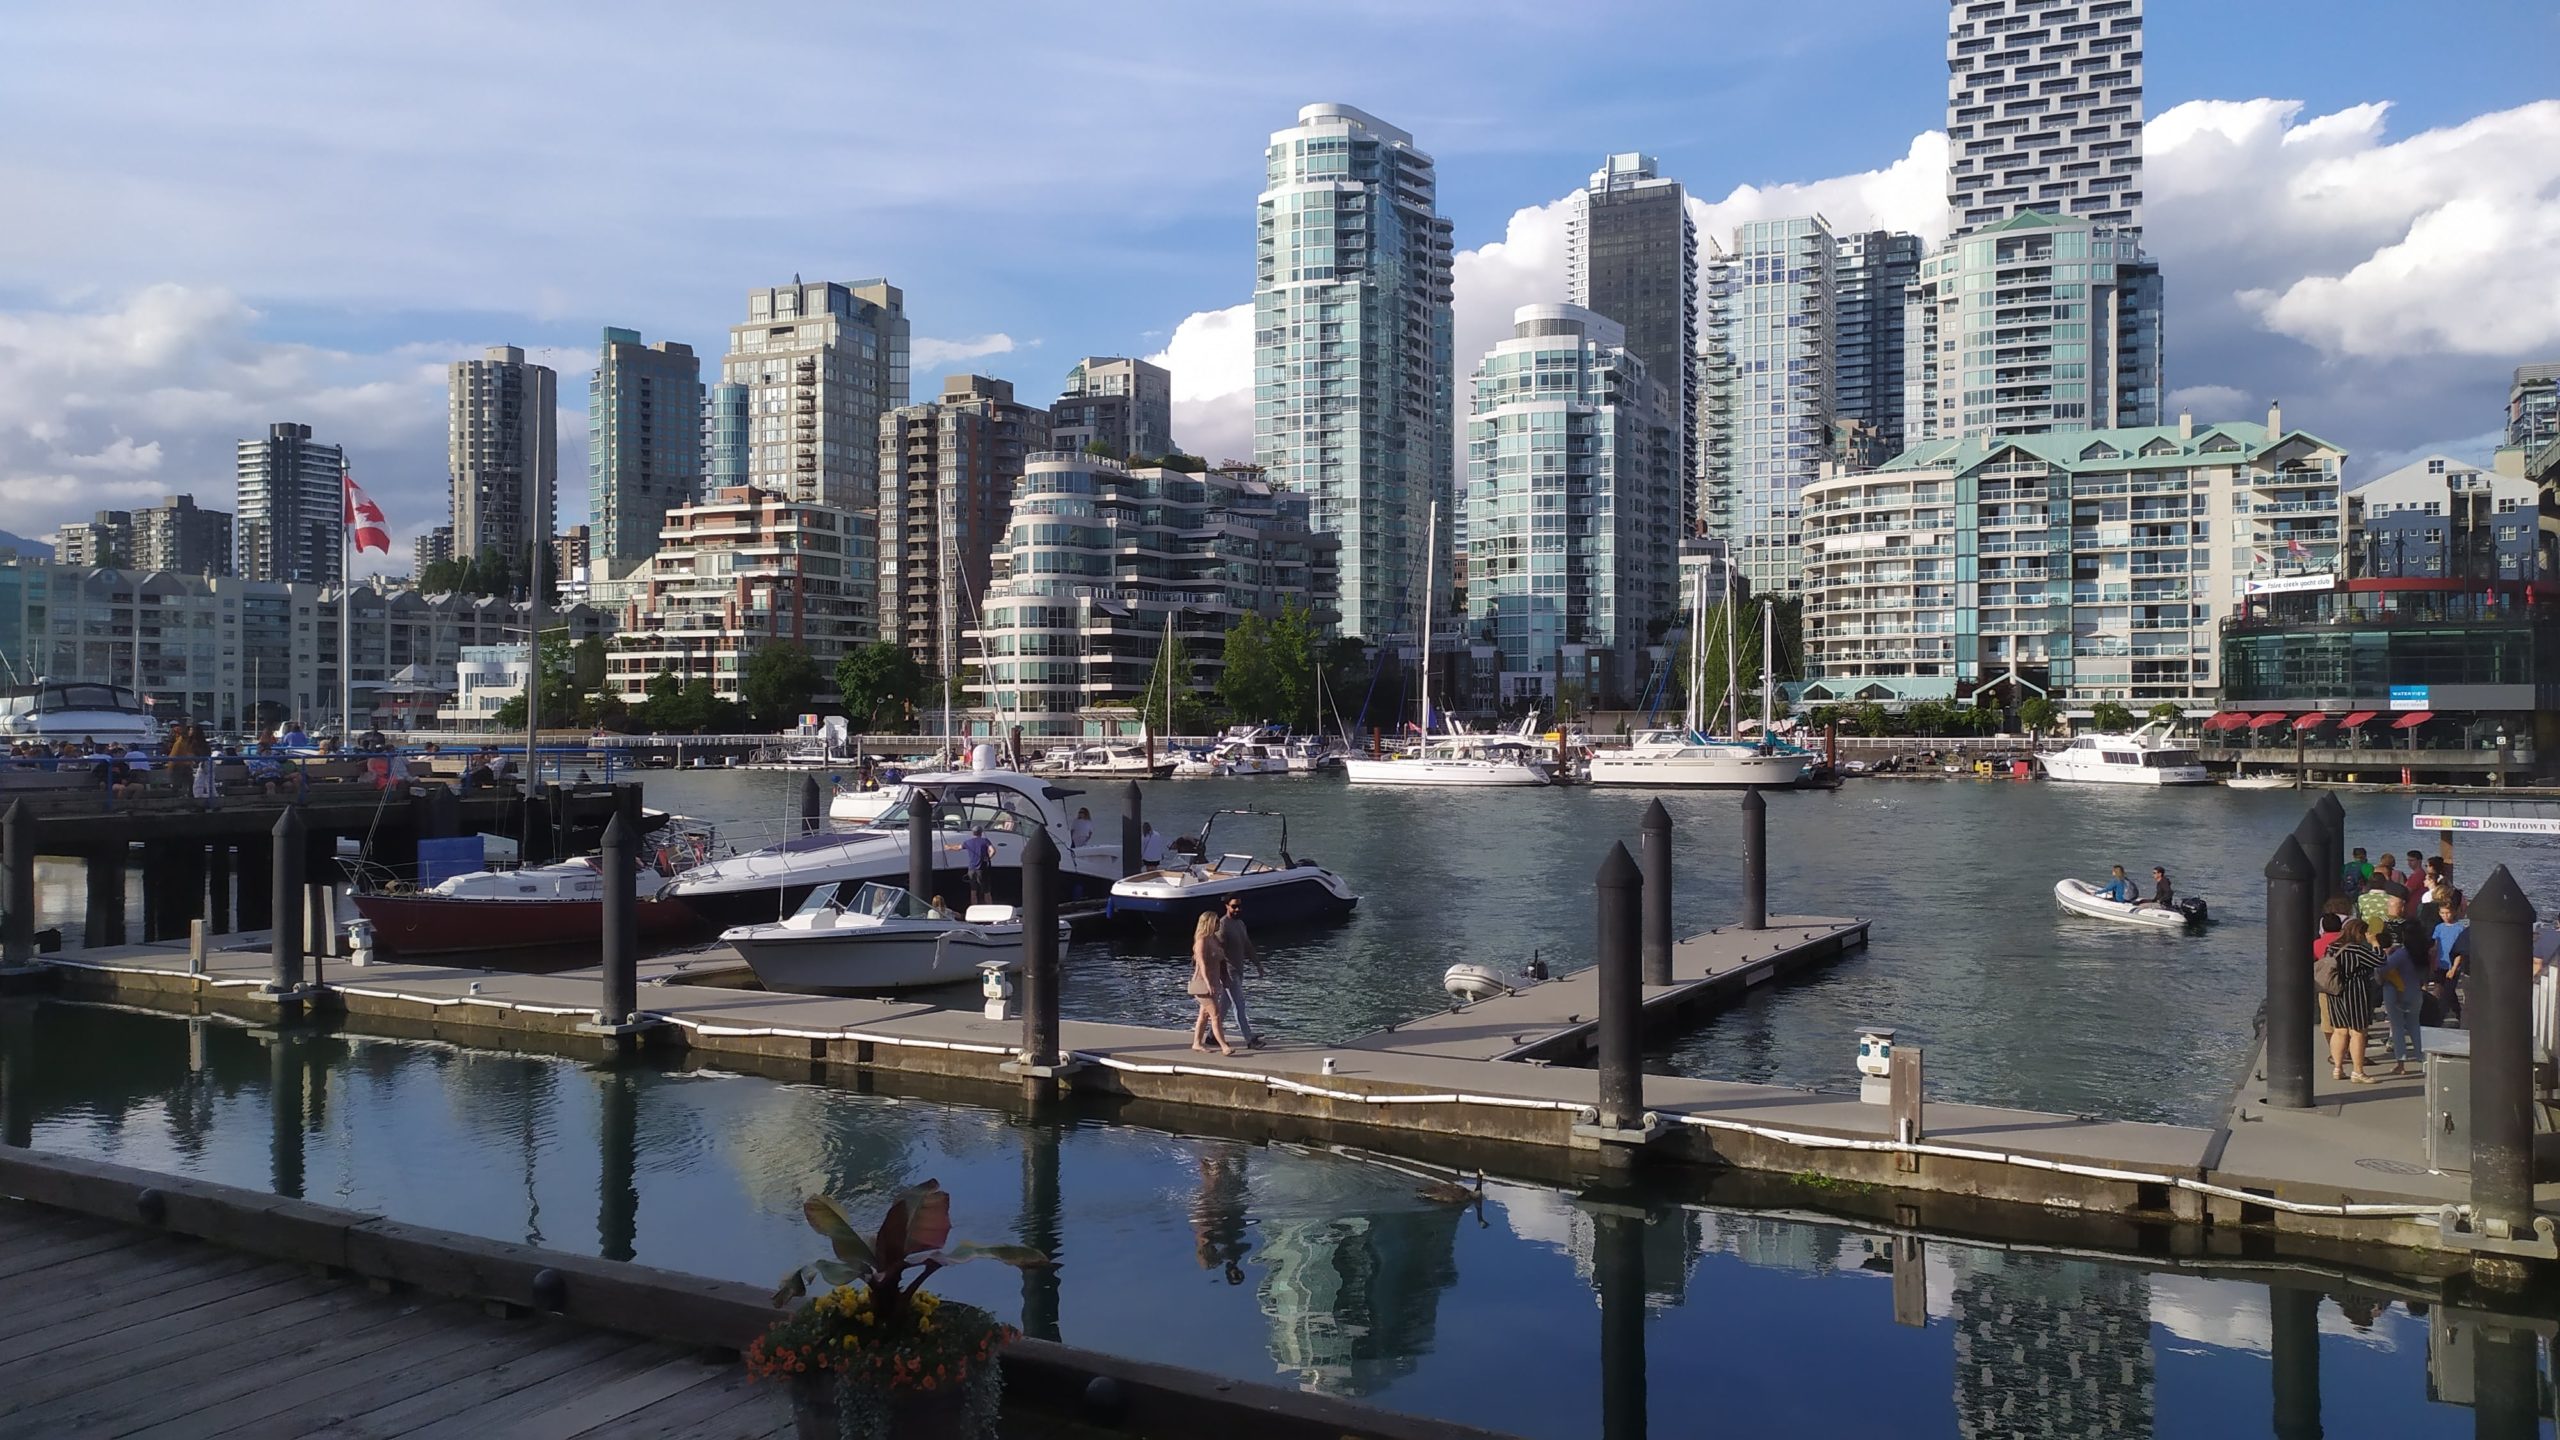 vue de Vancouver avec des immeubles modernes en face d'un port de plaisancea